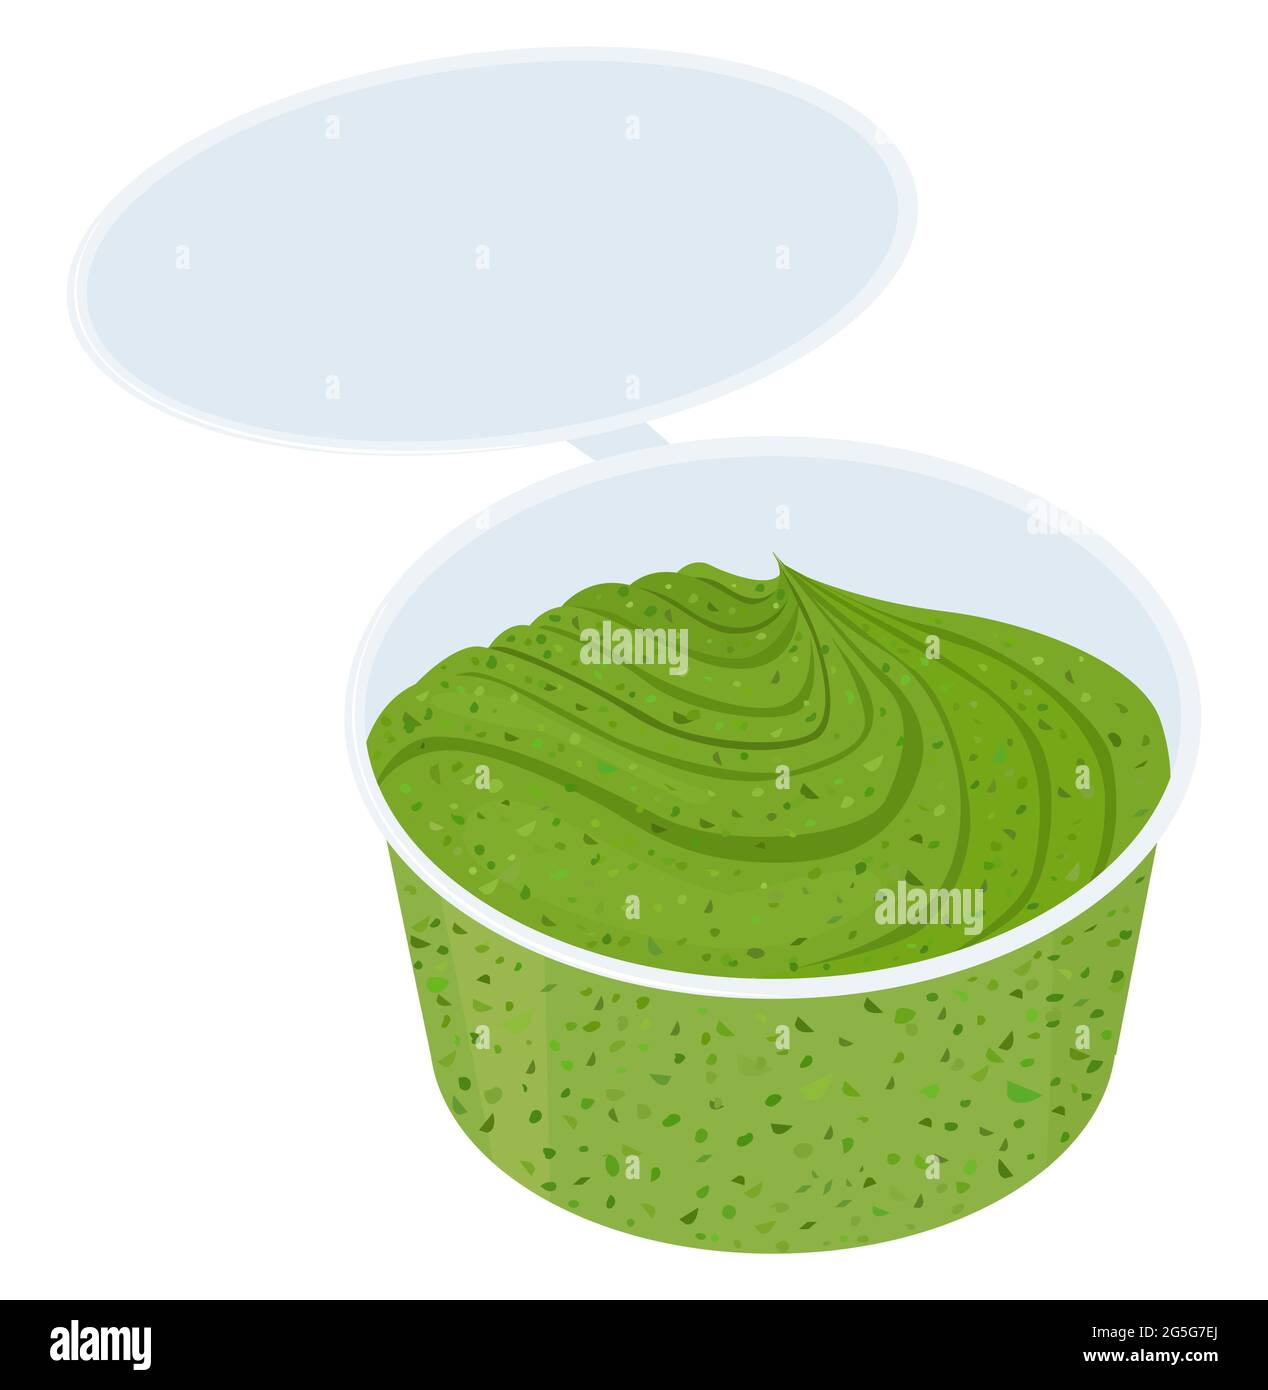 Sauce au pesto vert dans un petit bol en plastique sur fond blanc, délicieux condiment alimentaire de dessin animé. Illustration vectorielle. Illustration de Vecteur